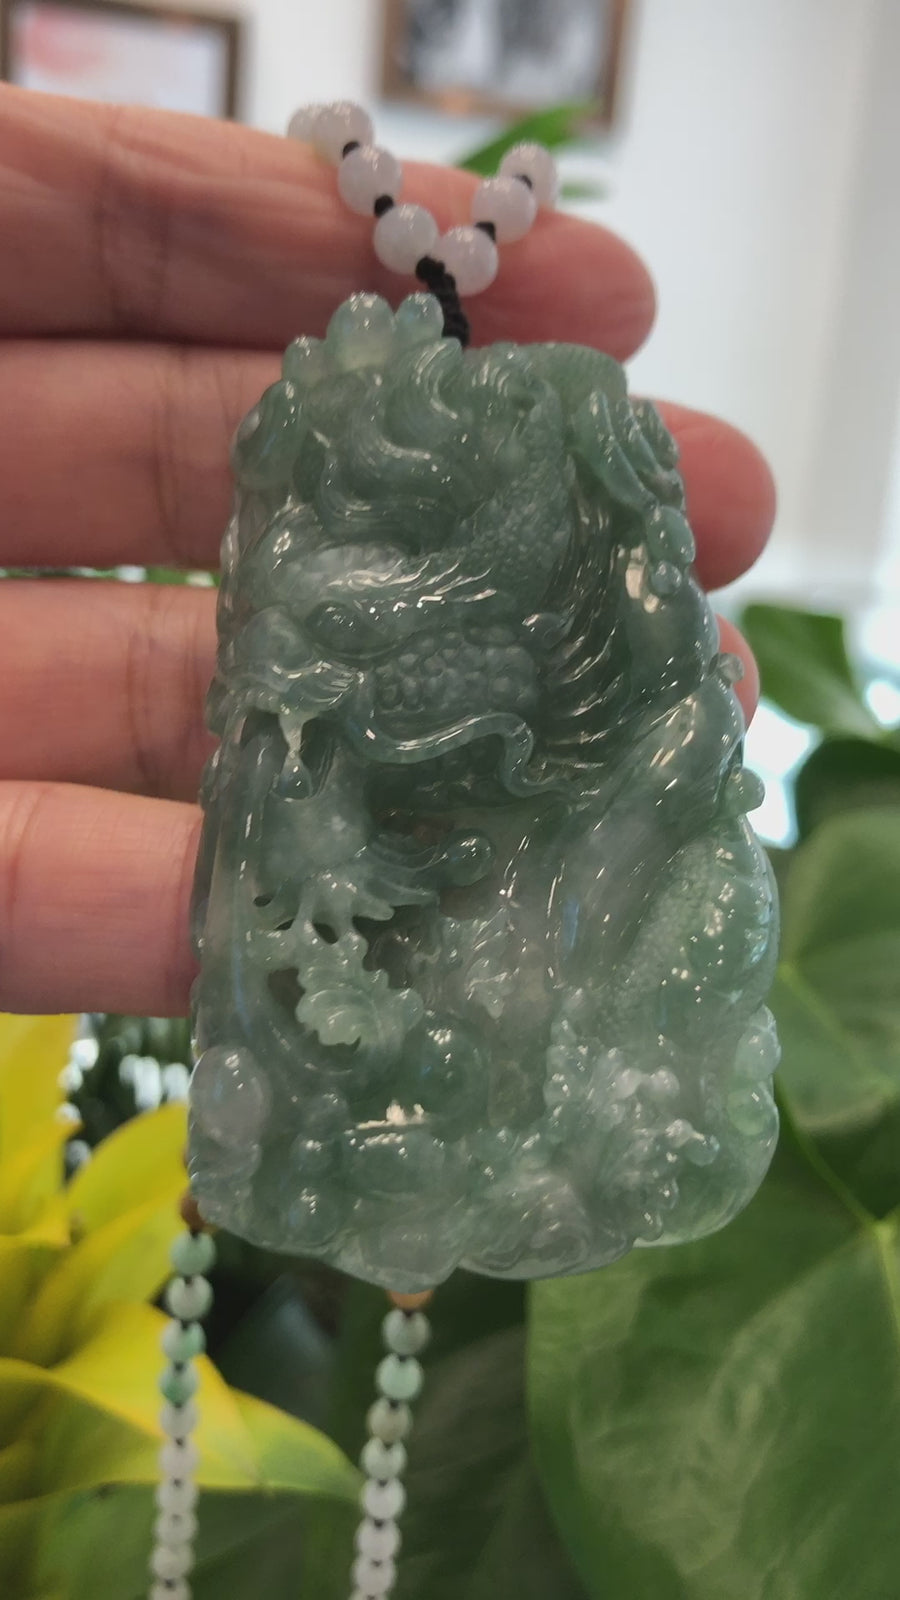 Baikalla™ "Soaring dragon" Natural Jadeite Jade Blue Green Pendant Necklace For Men, Collectibles